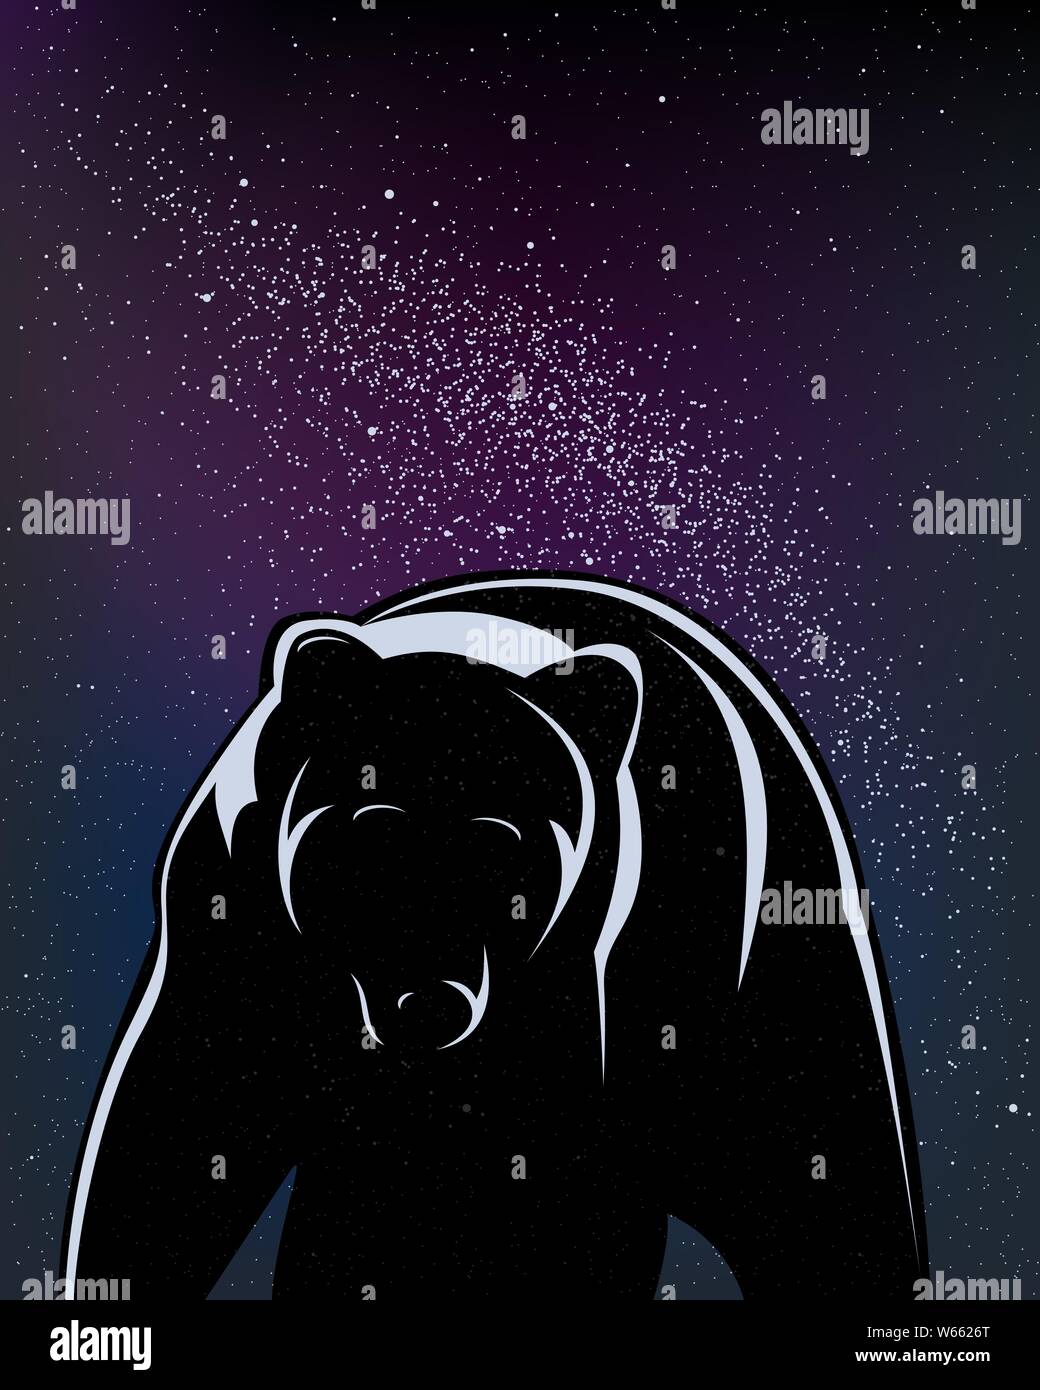 Illustrazione Vettoriale. Orso a piedi isolato in nero in una notte stellata. Illustrazione Vettoriale